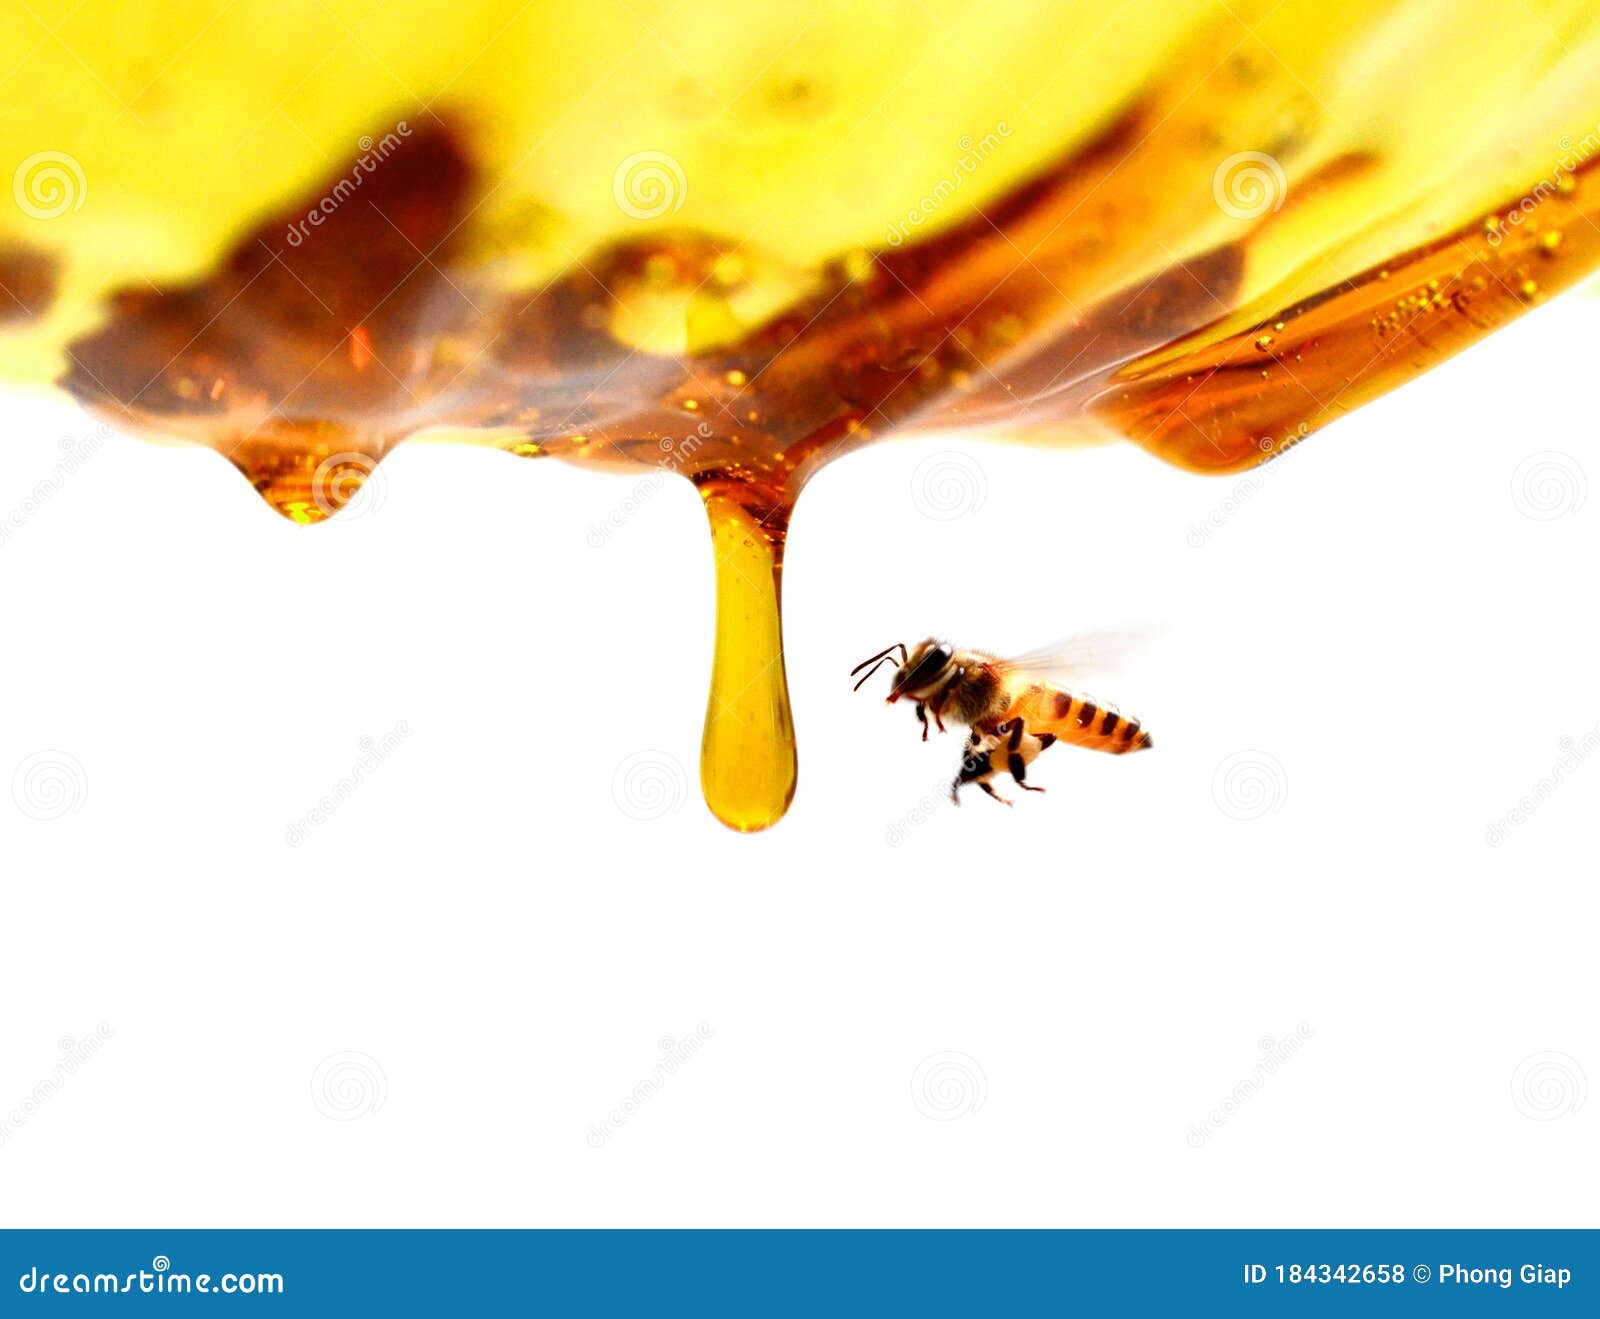 miel en verre avec l`abeille.